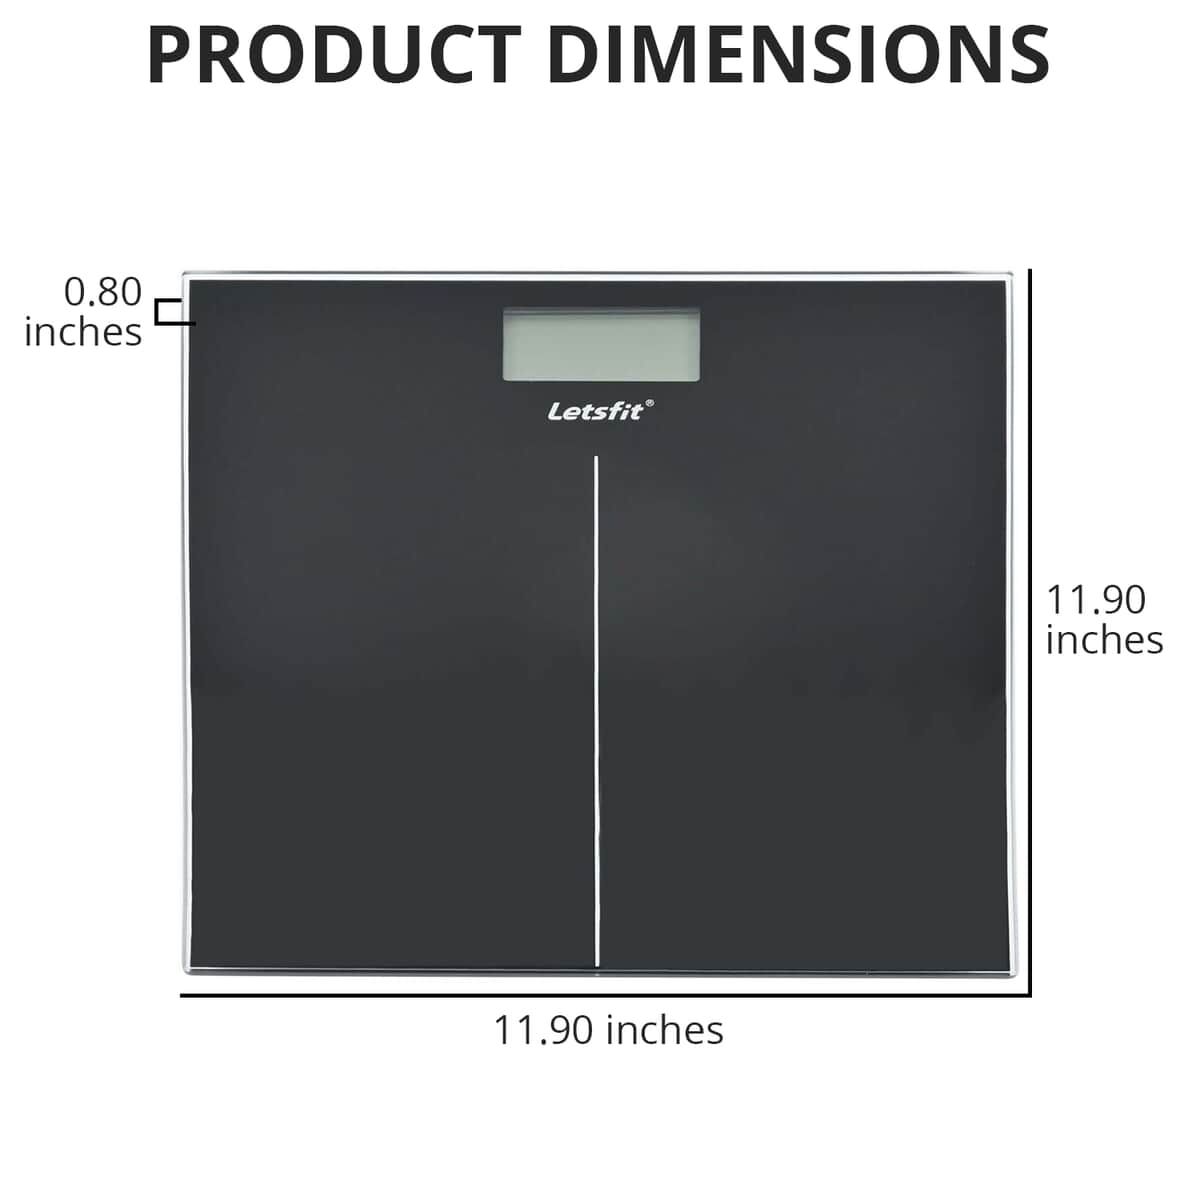 Letsfit Digital Bathroom Scale - Tempered Glass, Black for sale online